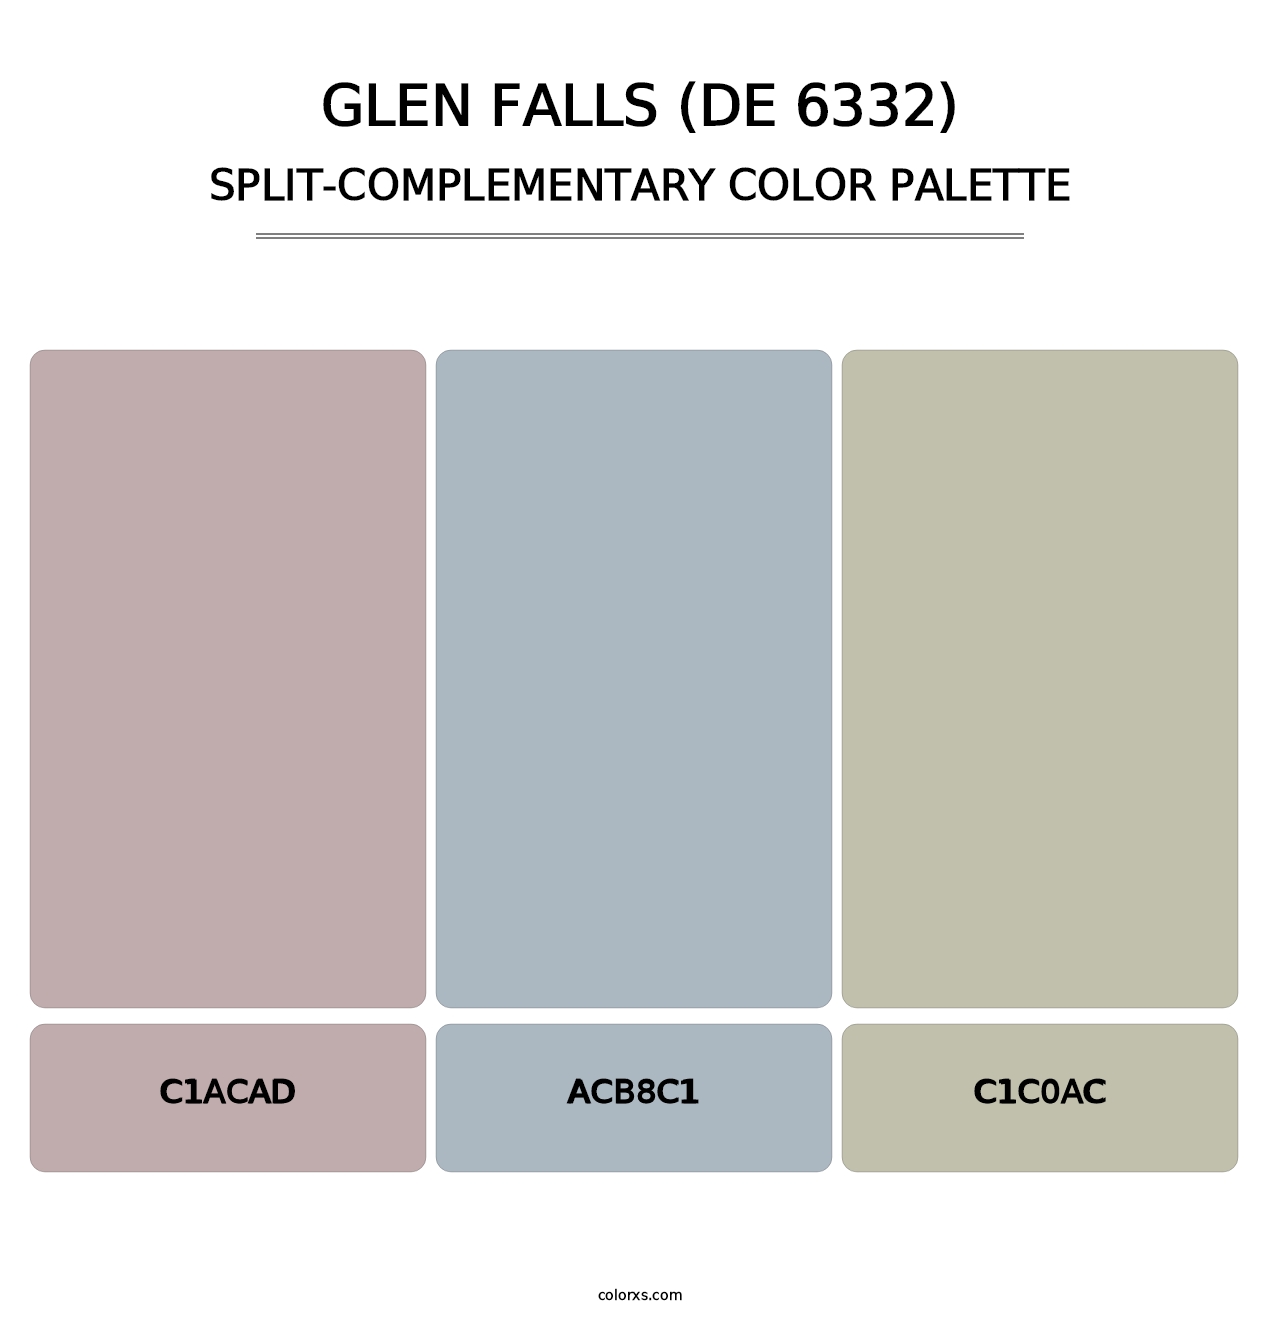 Glen Falls (DE 6332) - Split-Complementary Color Palette